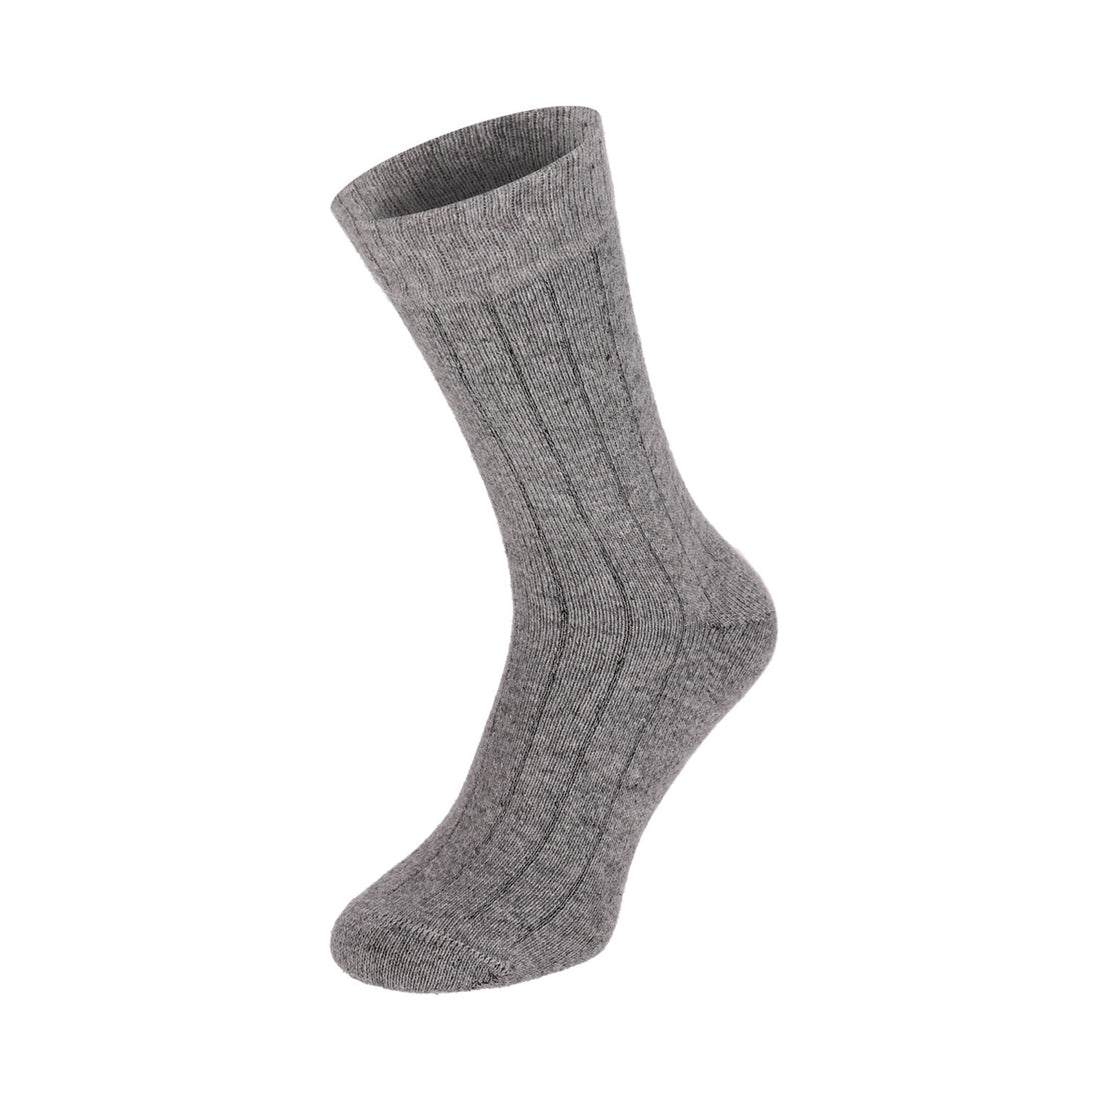 ChiliLifestyle Socken Winter Merino Wolle Damen Herren Warm 4 Paar